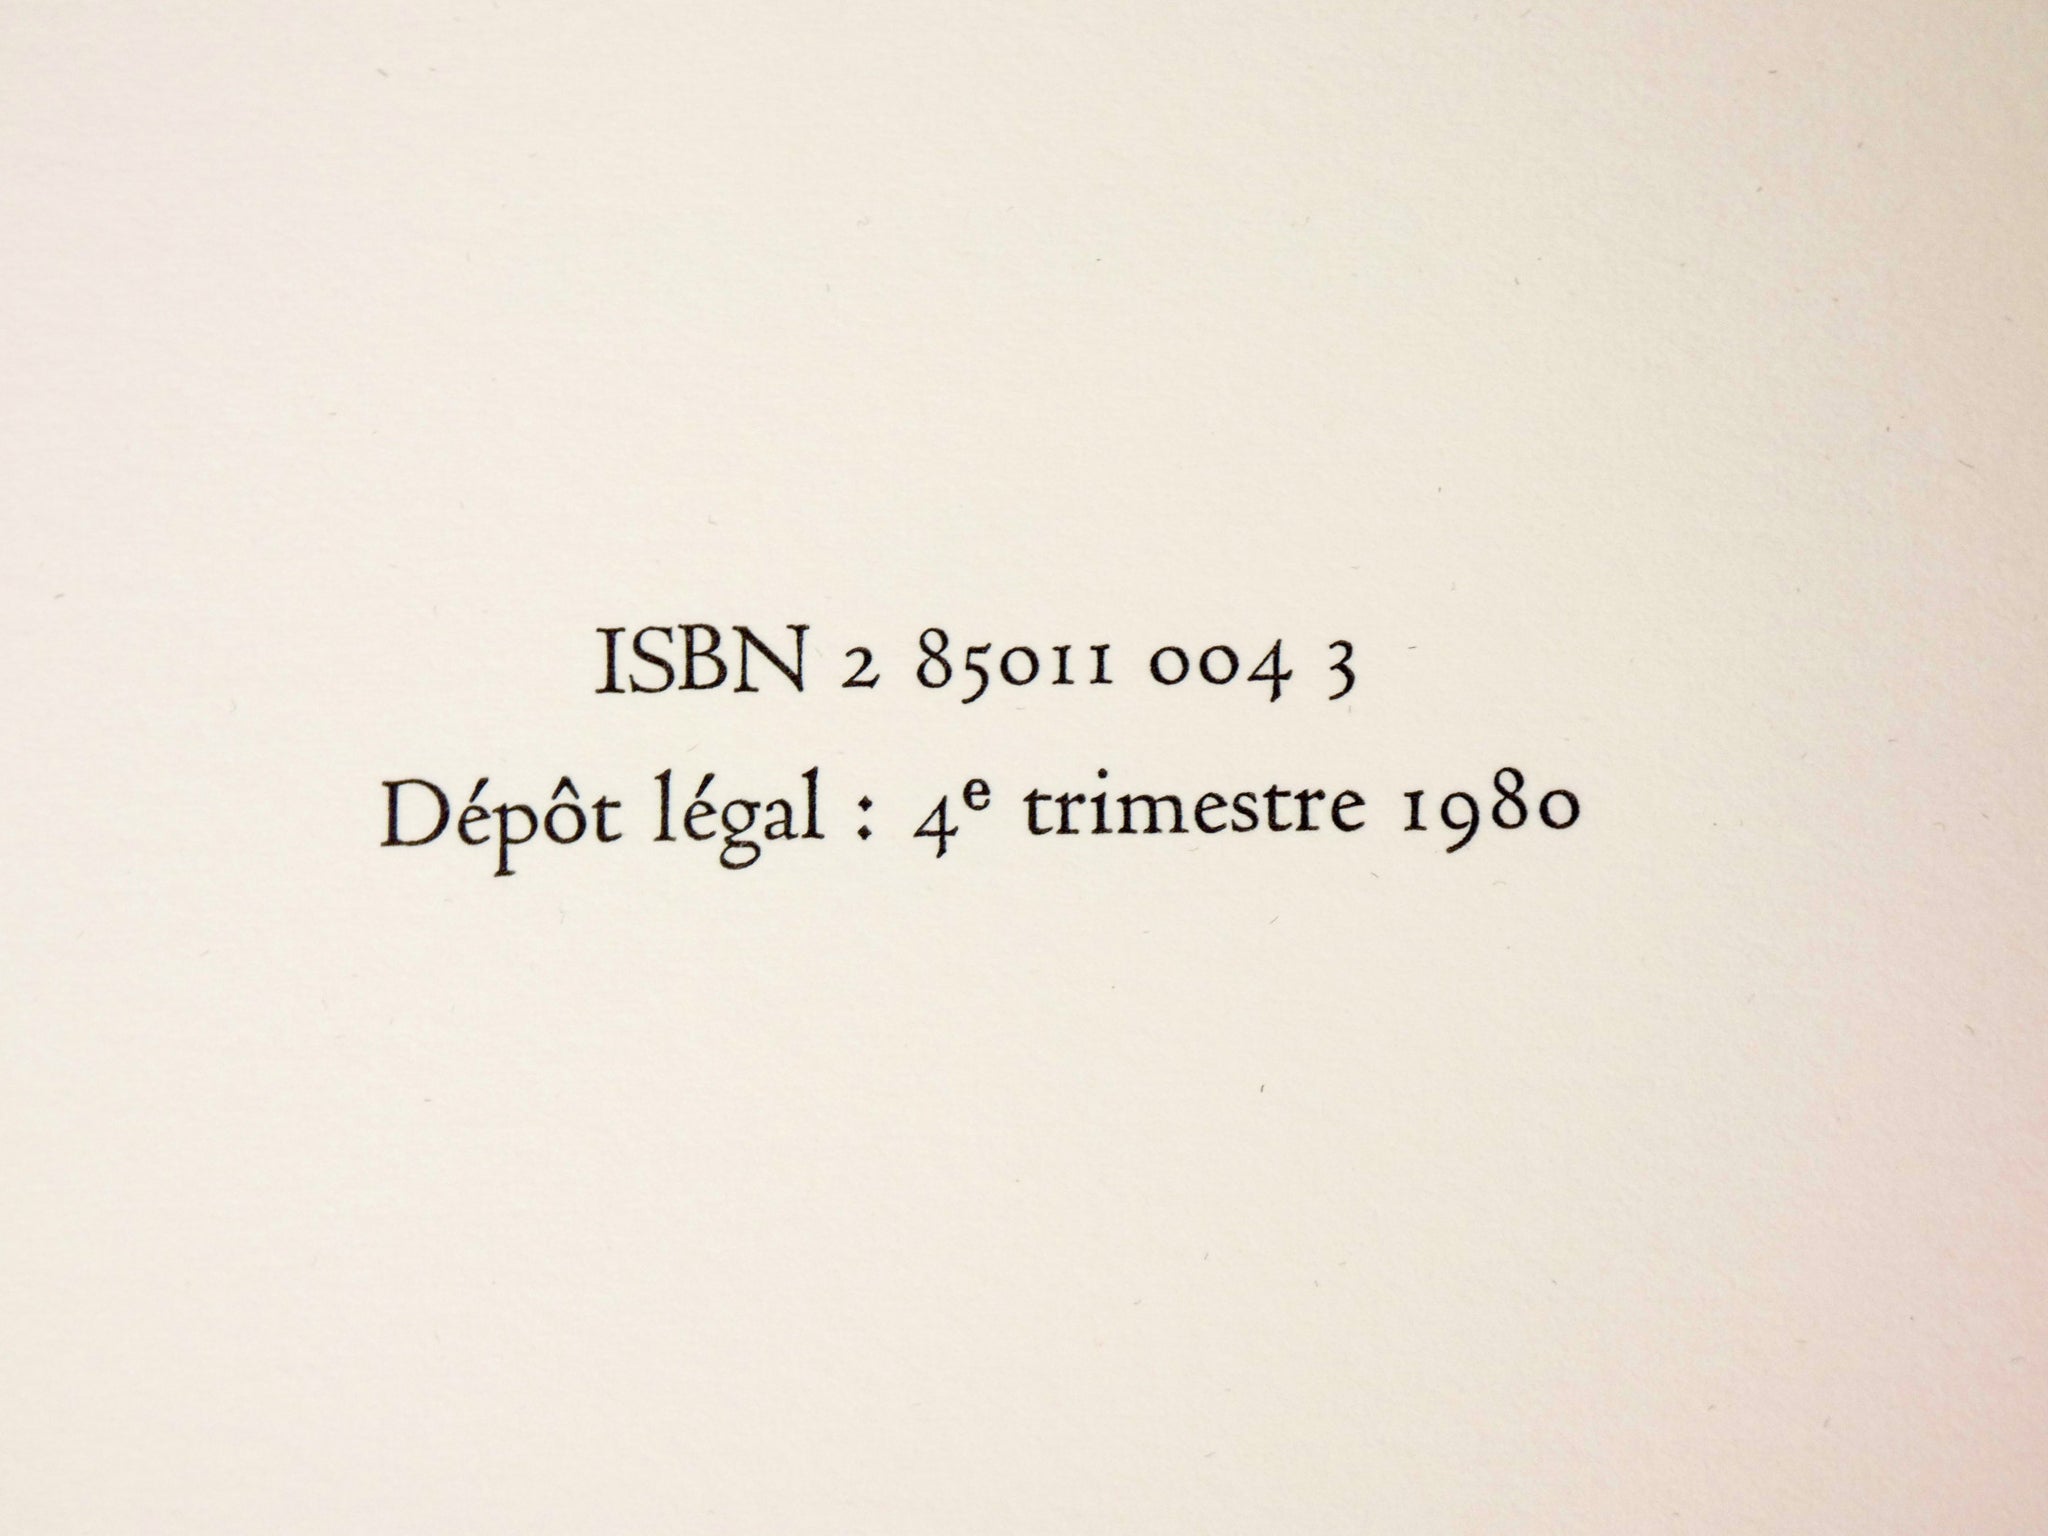 libro centuries et autres propheties de nostradamus litografie jacquot 1980